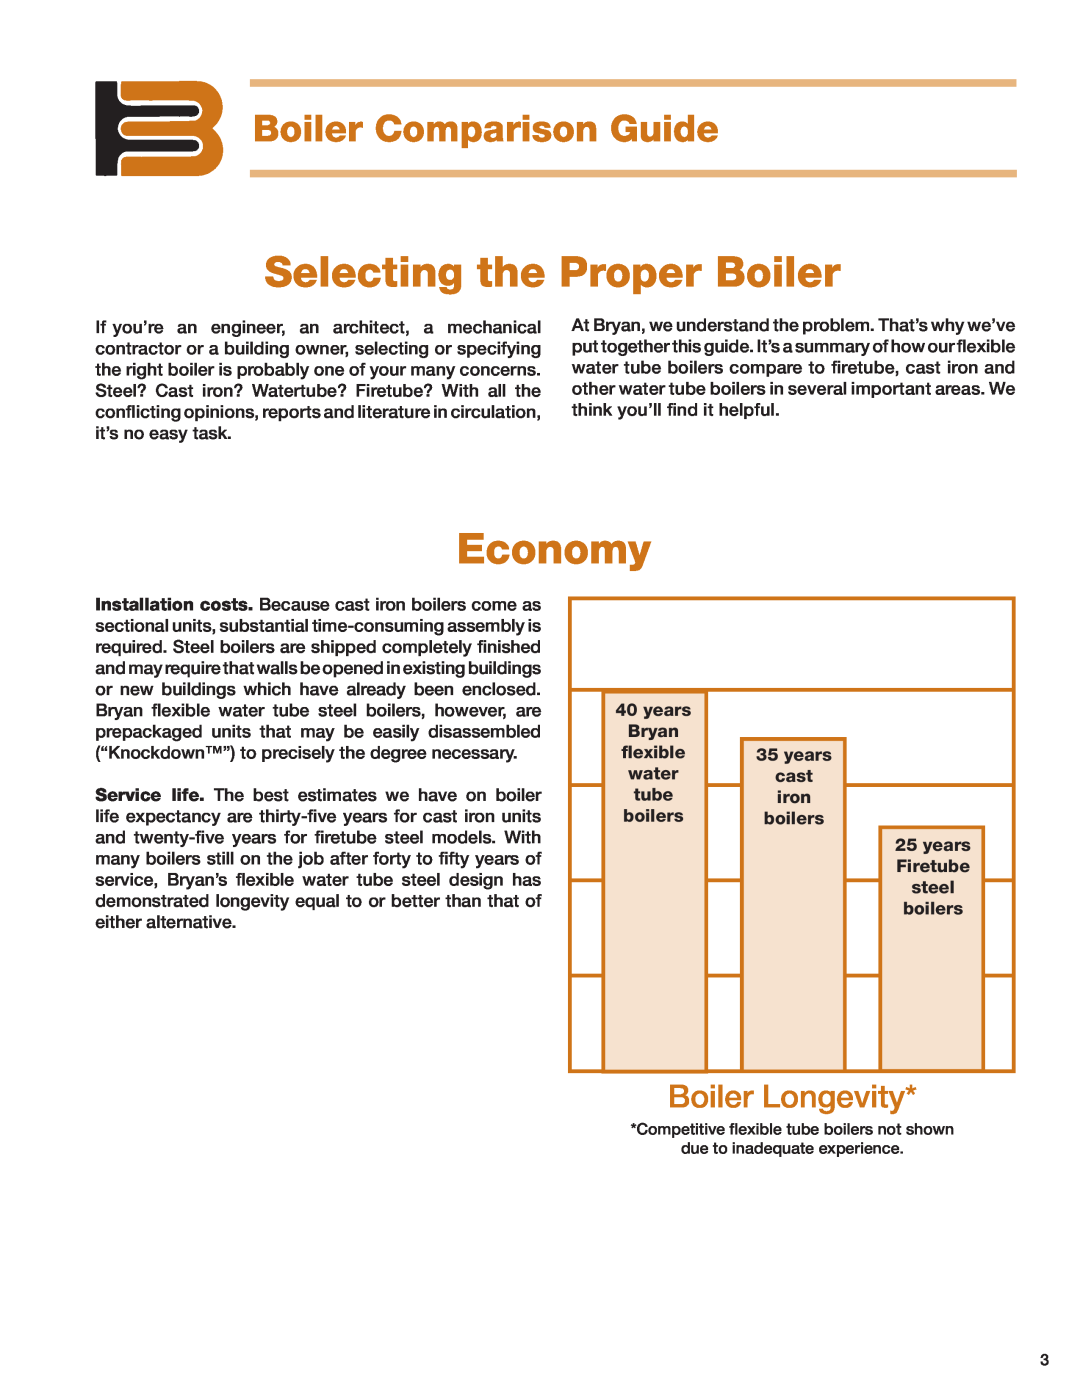 Bryan Boilers Tube Steel Boilers manual Selecting the Proper Boiler, Economy, Boiler Comparison Guide, Boiler Longevity 